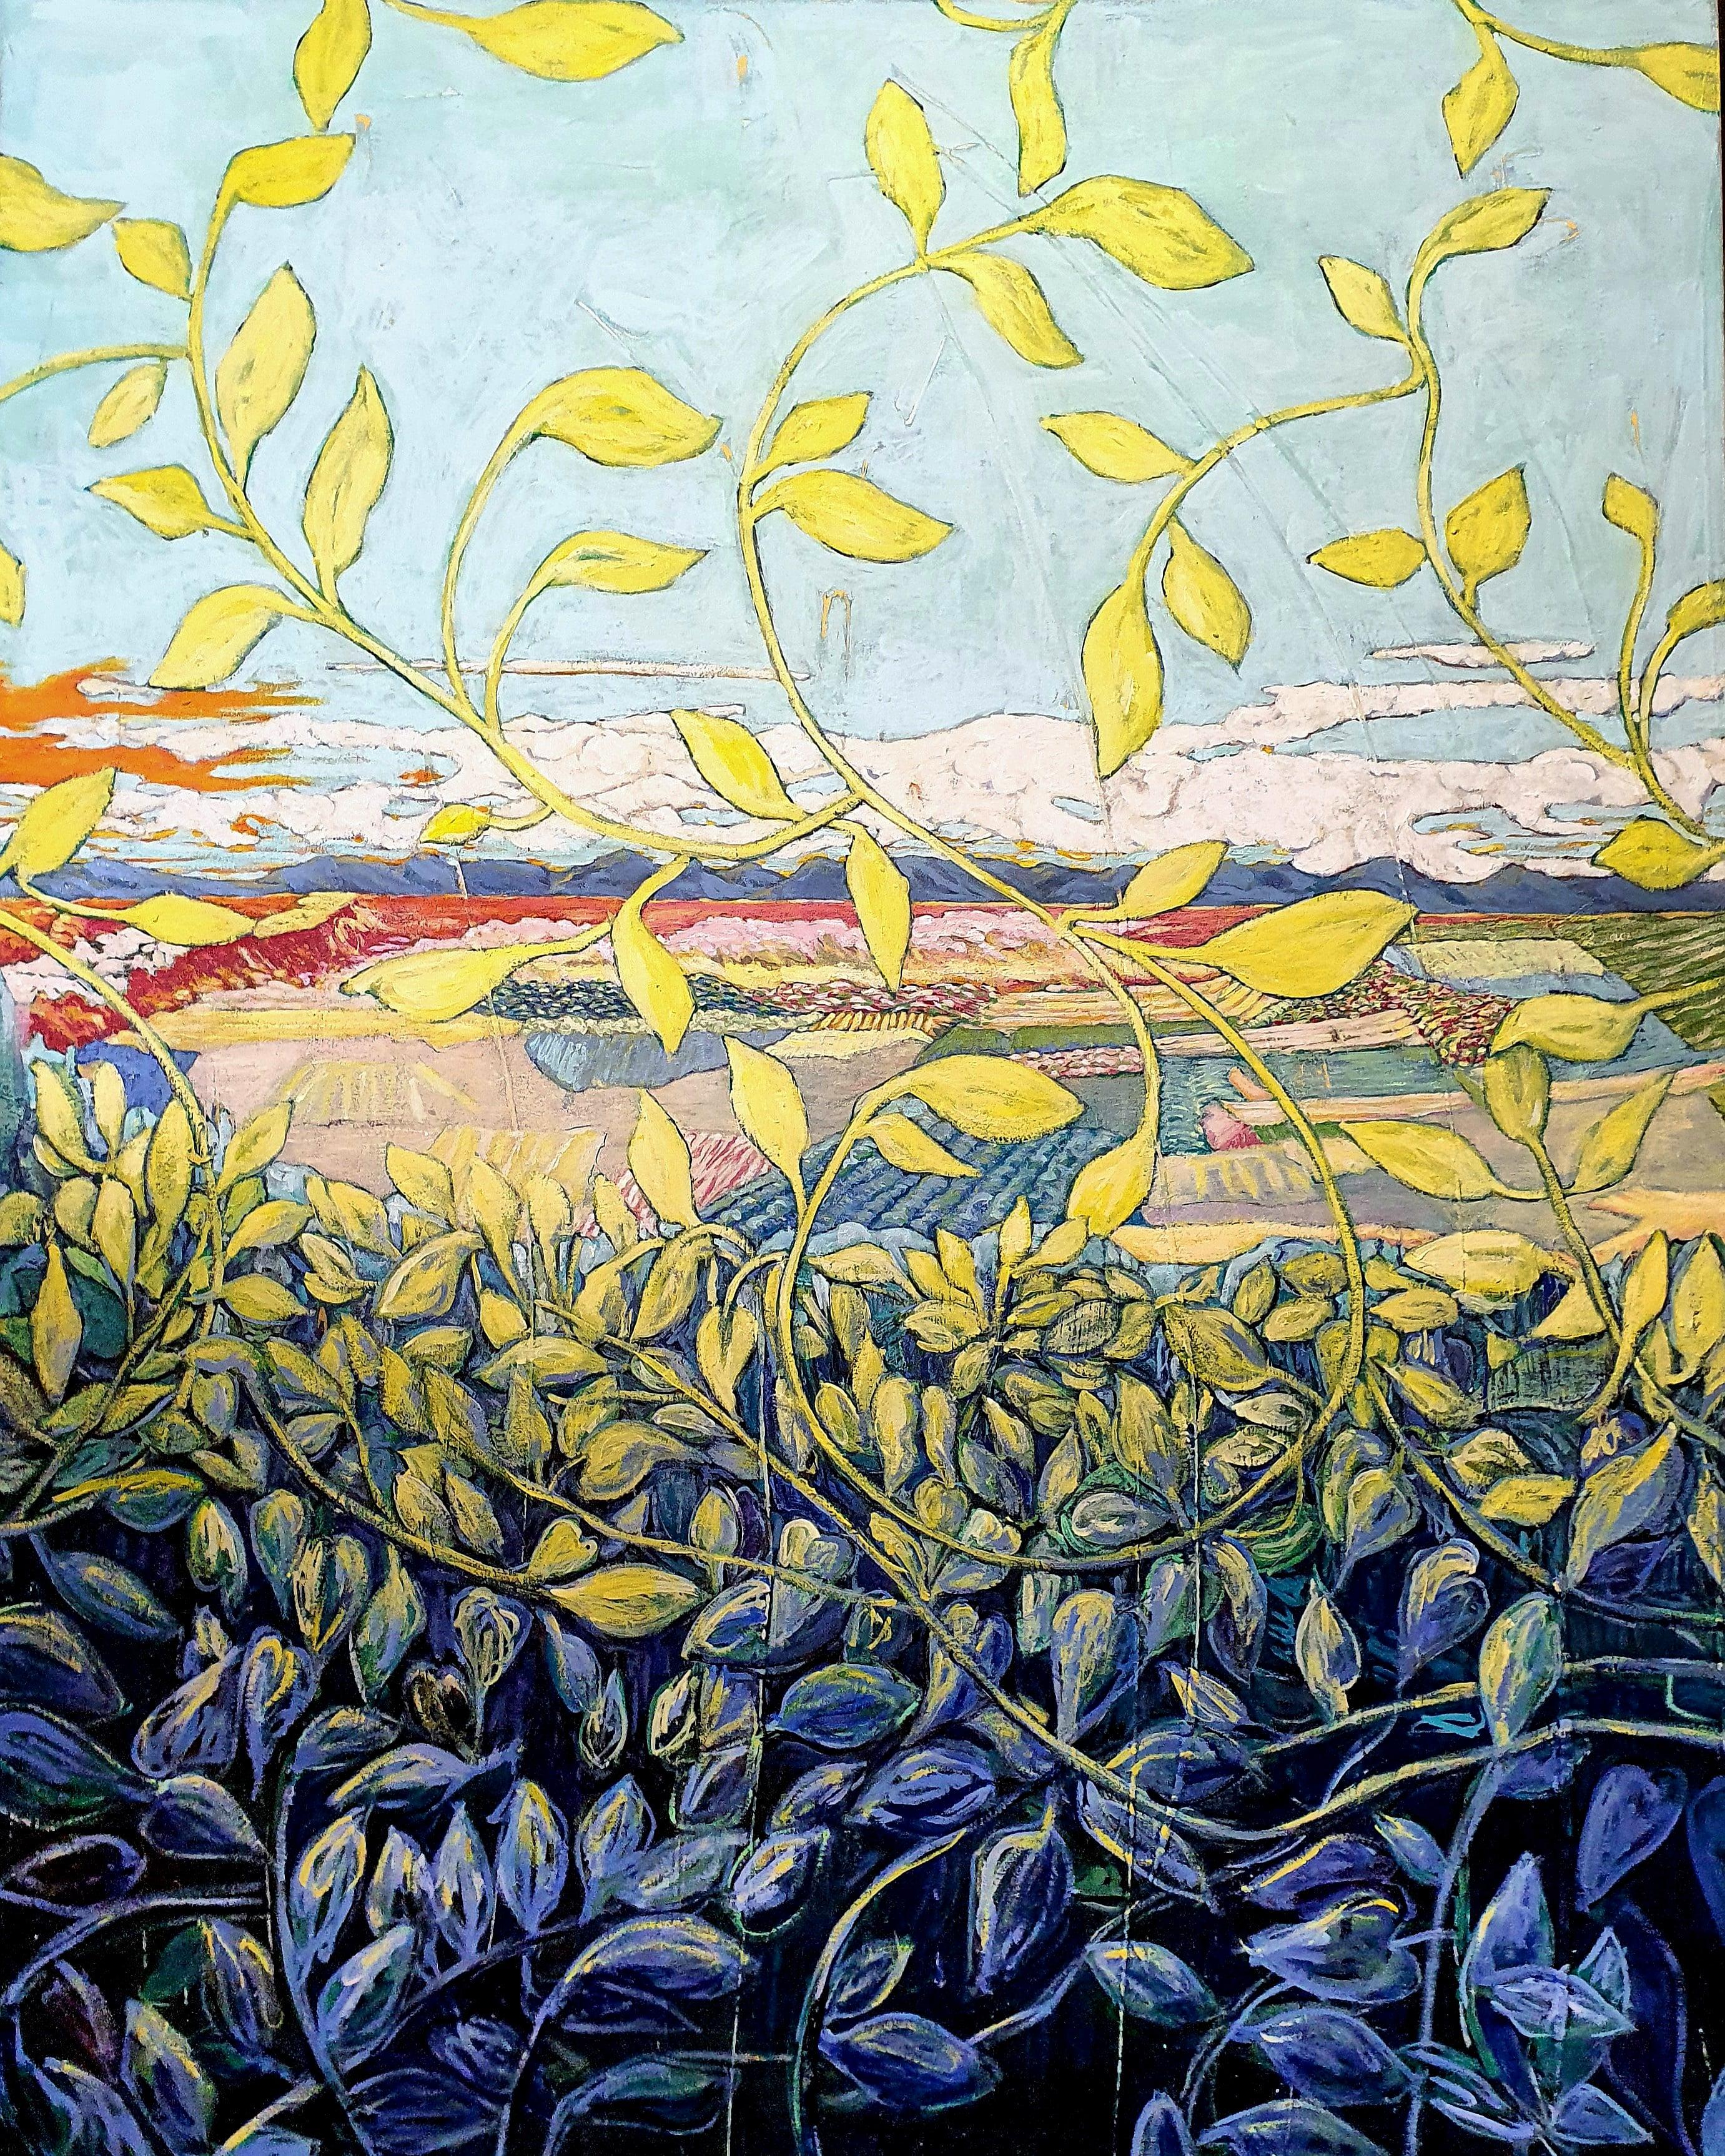 Peinture de paysage exotique colorée « Through the Grapevine » (A travers la vigne)